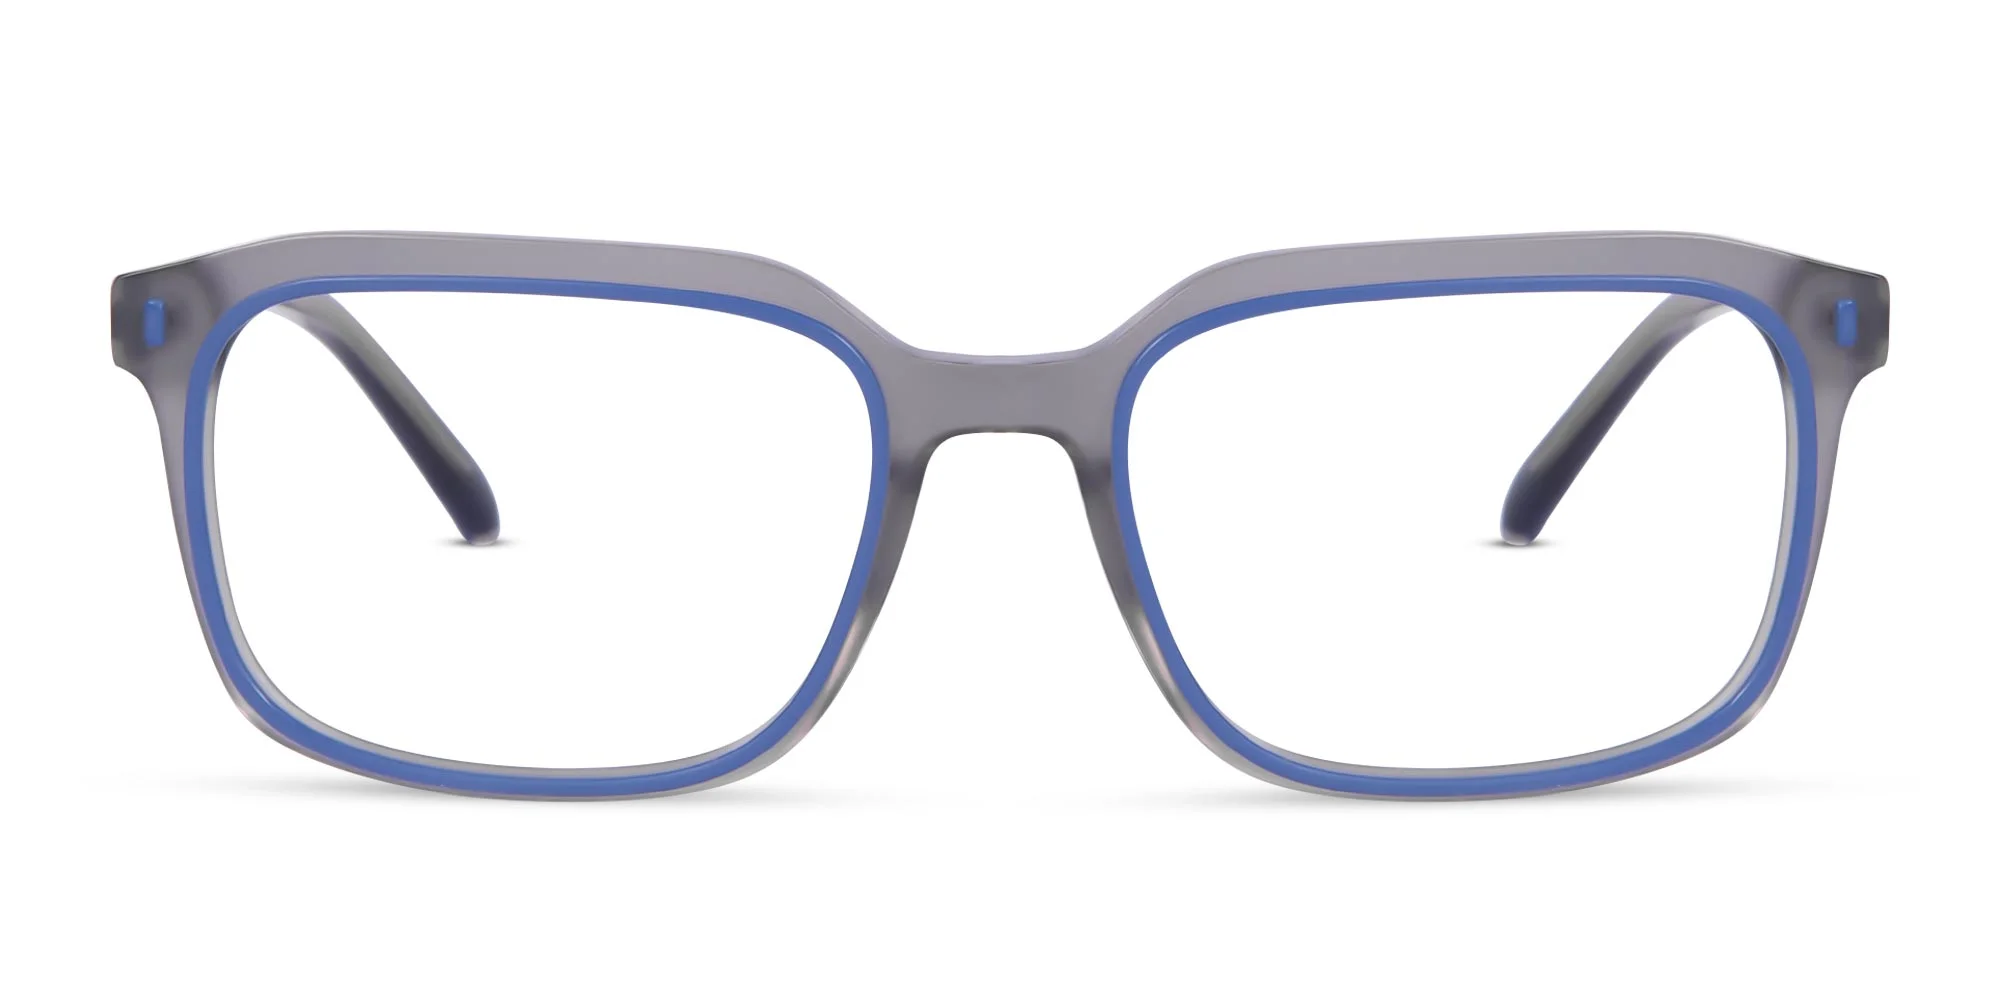 Designer Rectangular Glasses-1